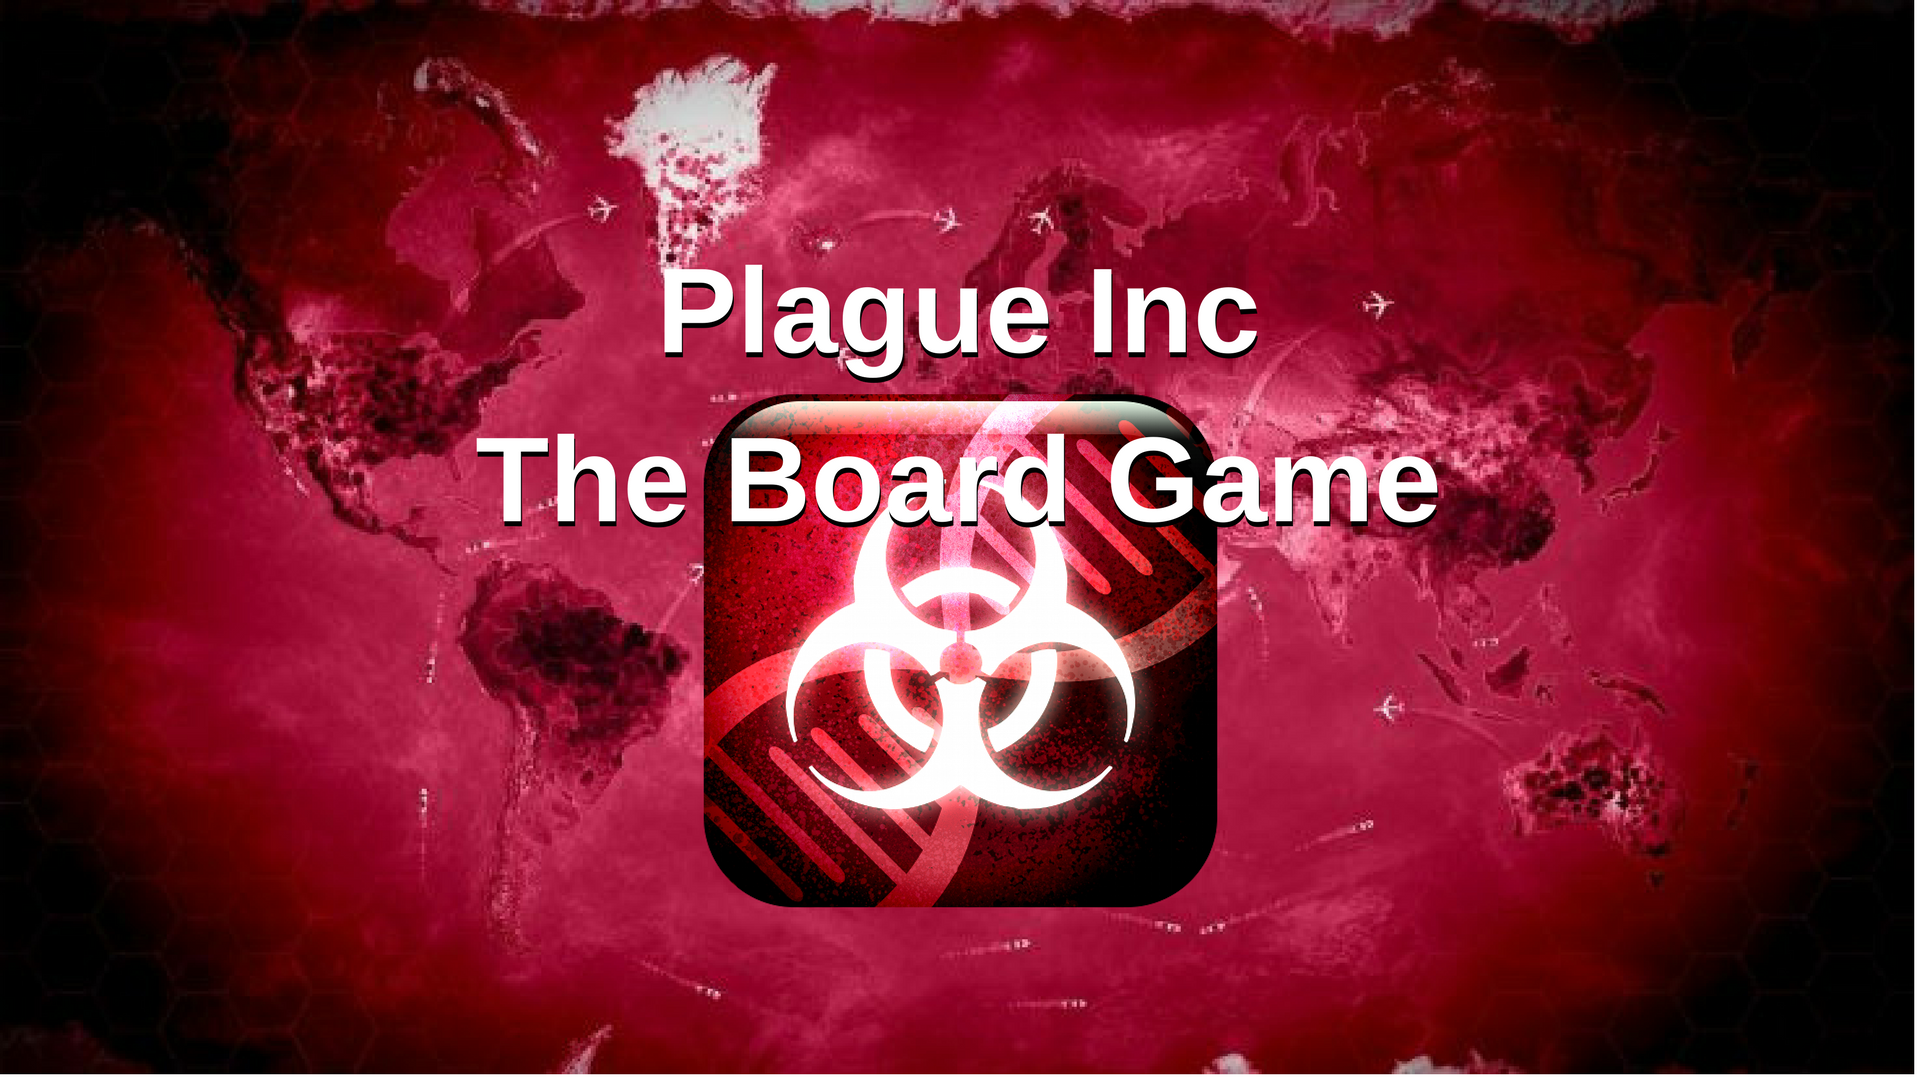 Премиум версия плагуе инк. Плагуе Инк. Plague Inc настольная игра. Plague Inc Boarding game. Карточки плагуе Инк.